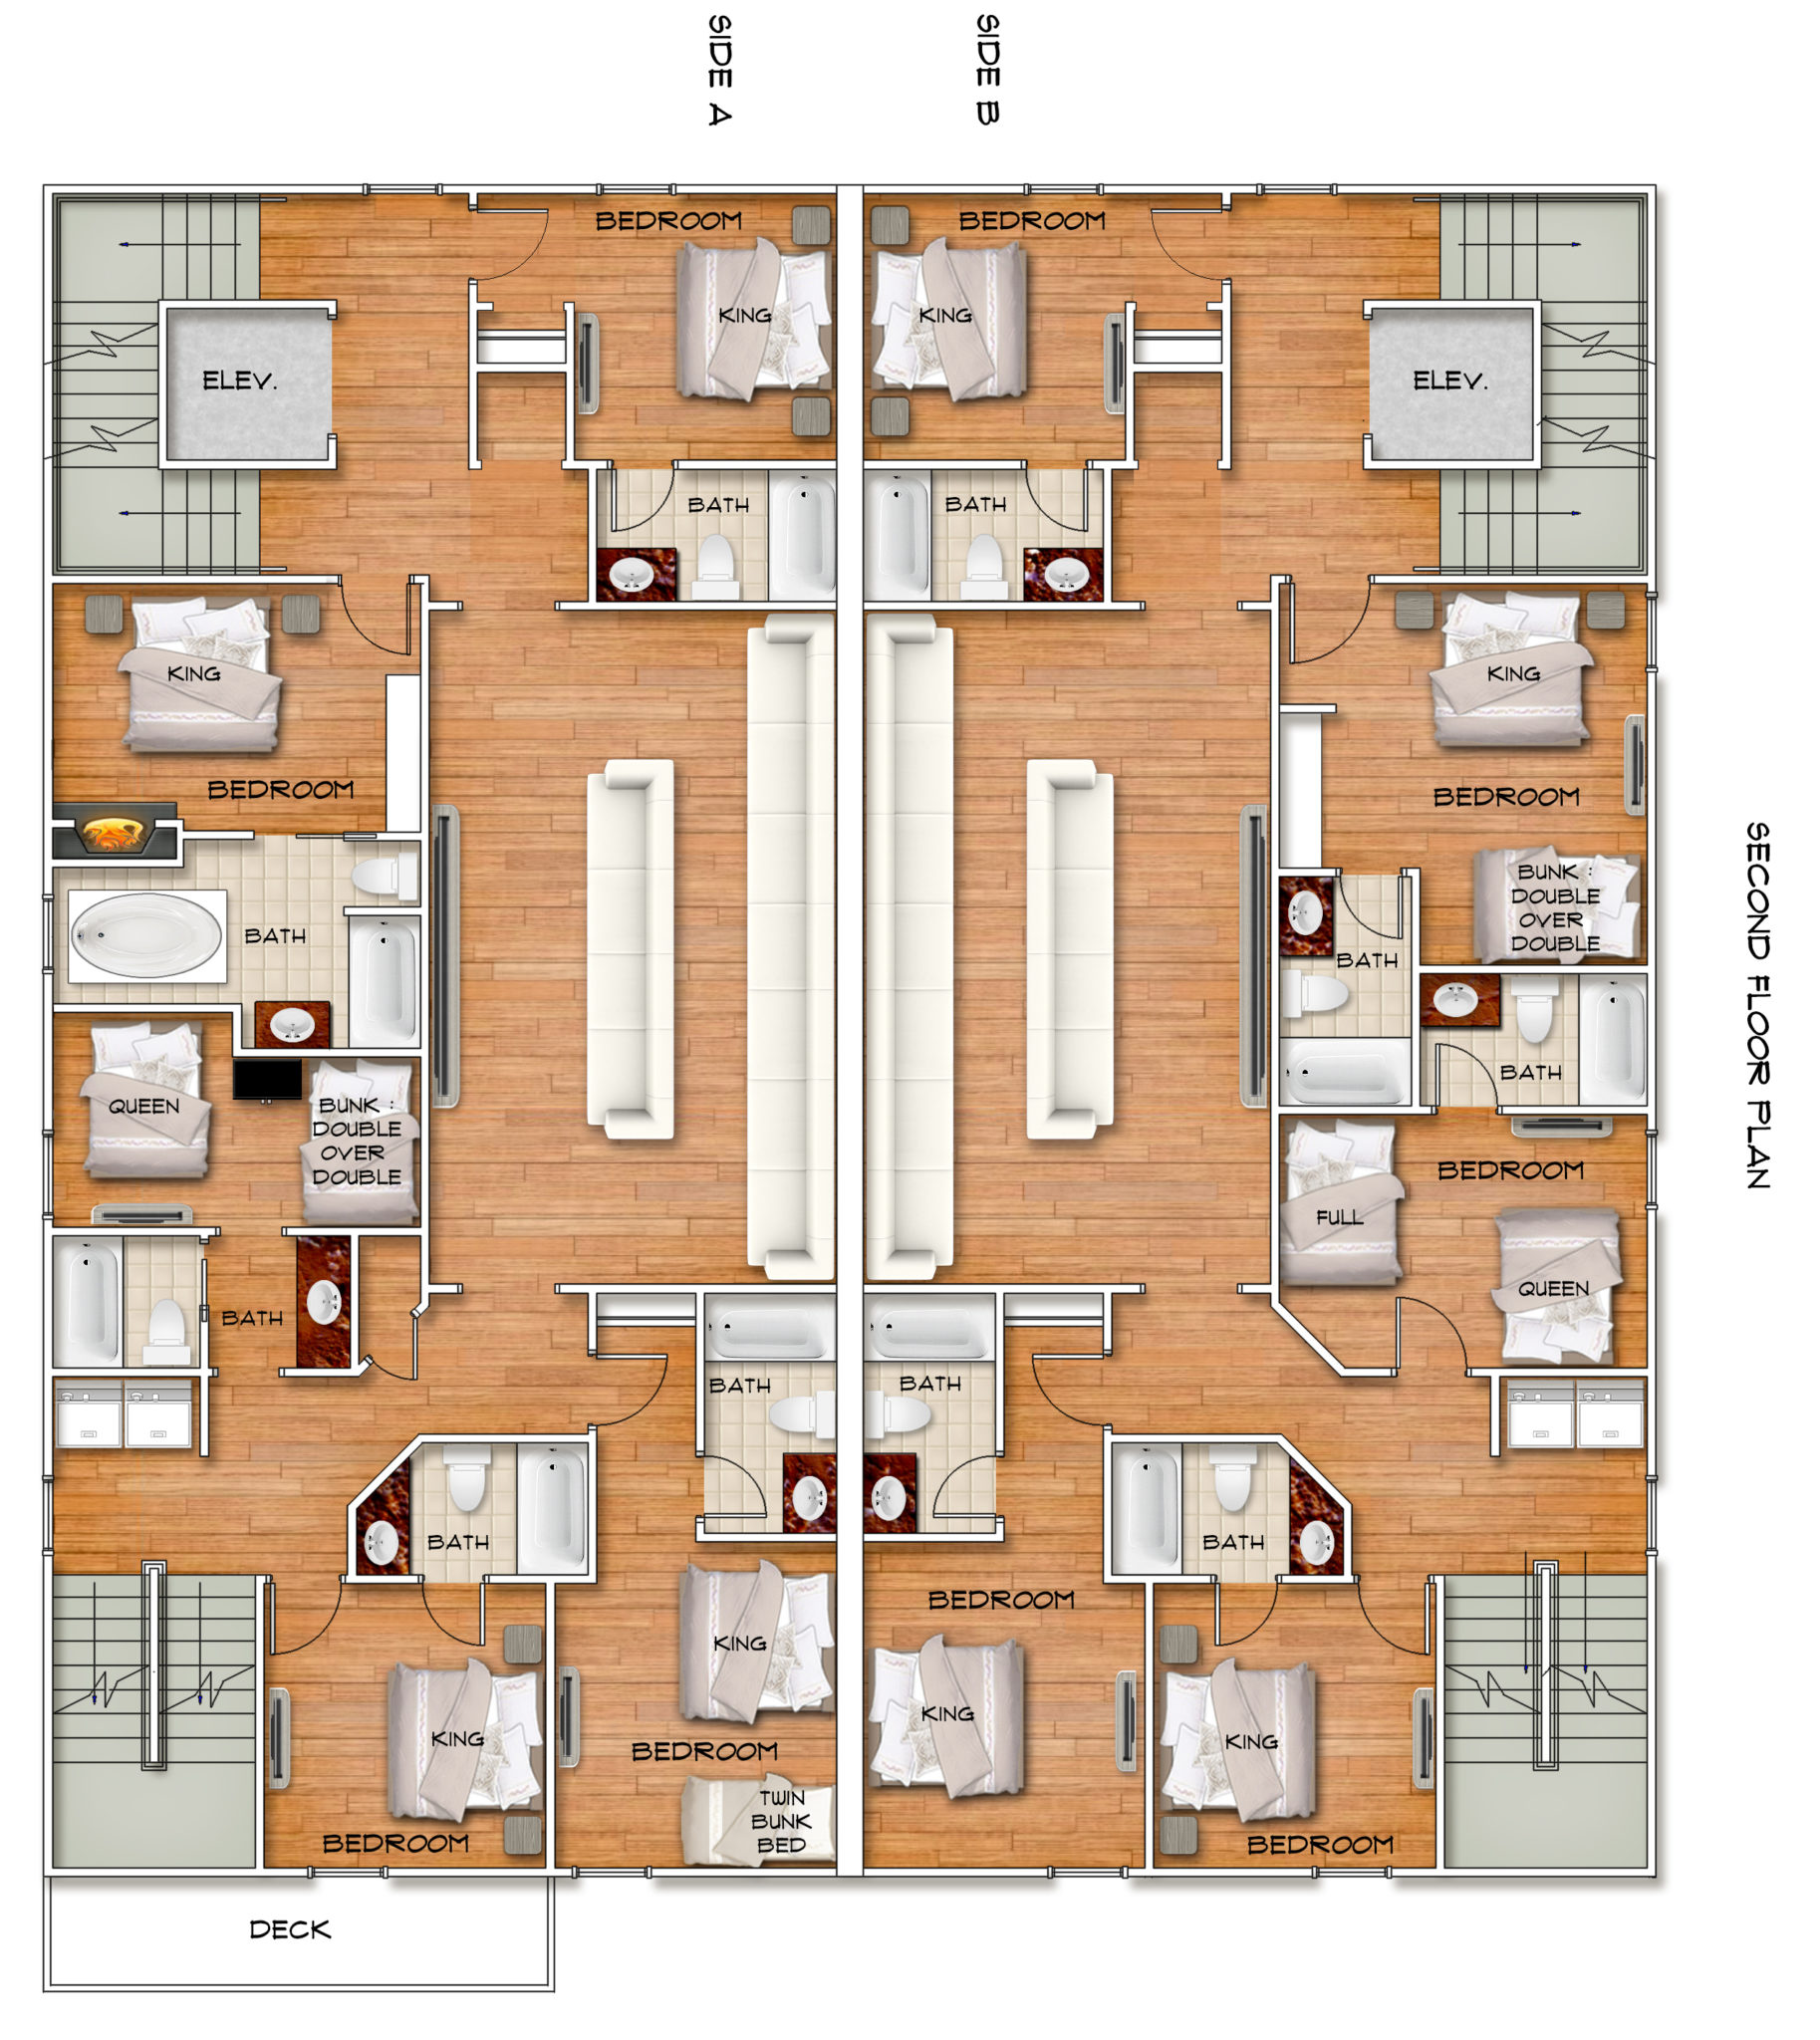 5401 bedroom floor plans